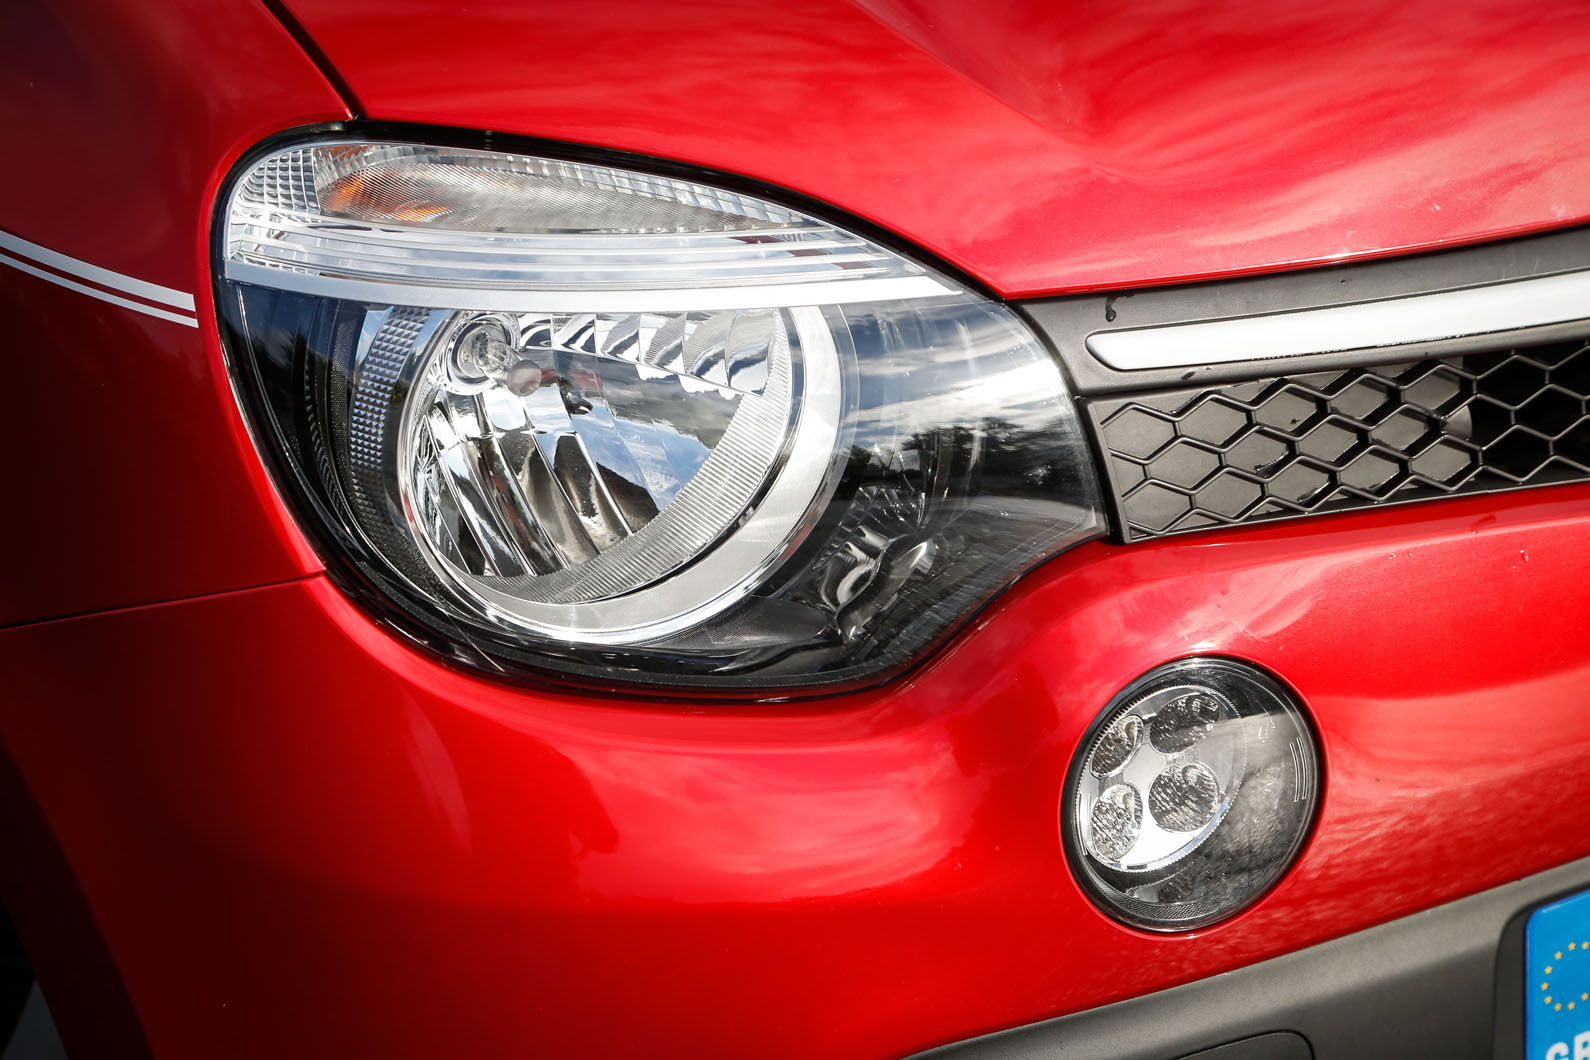 Renault Twingo headlight